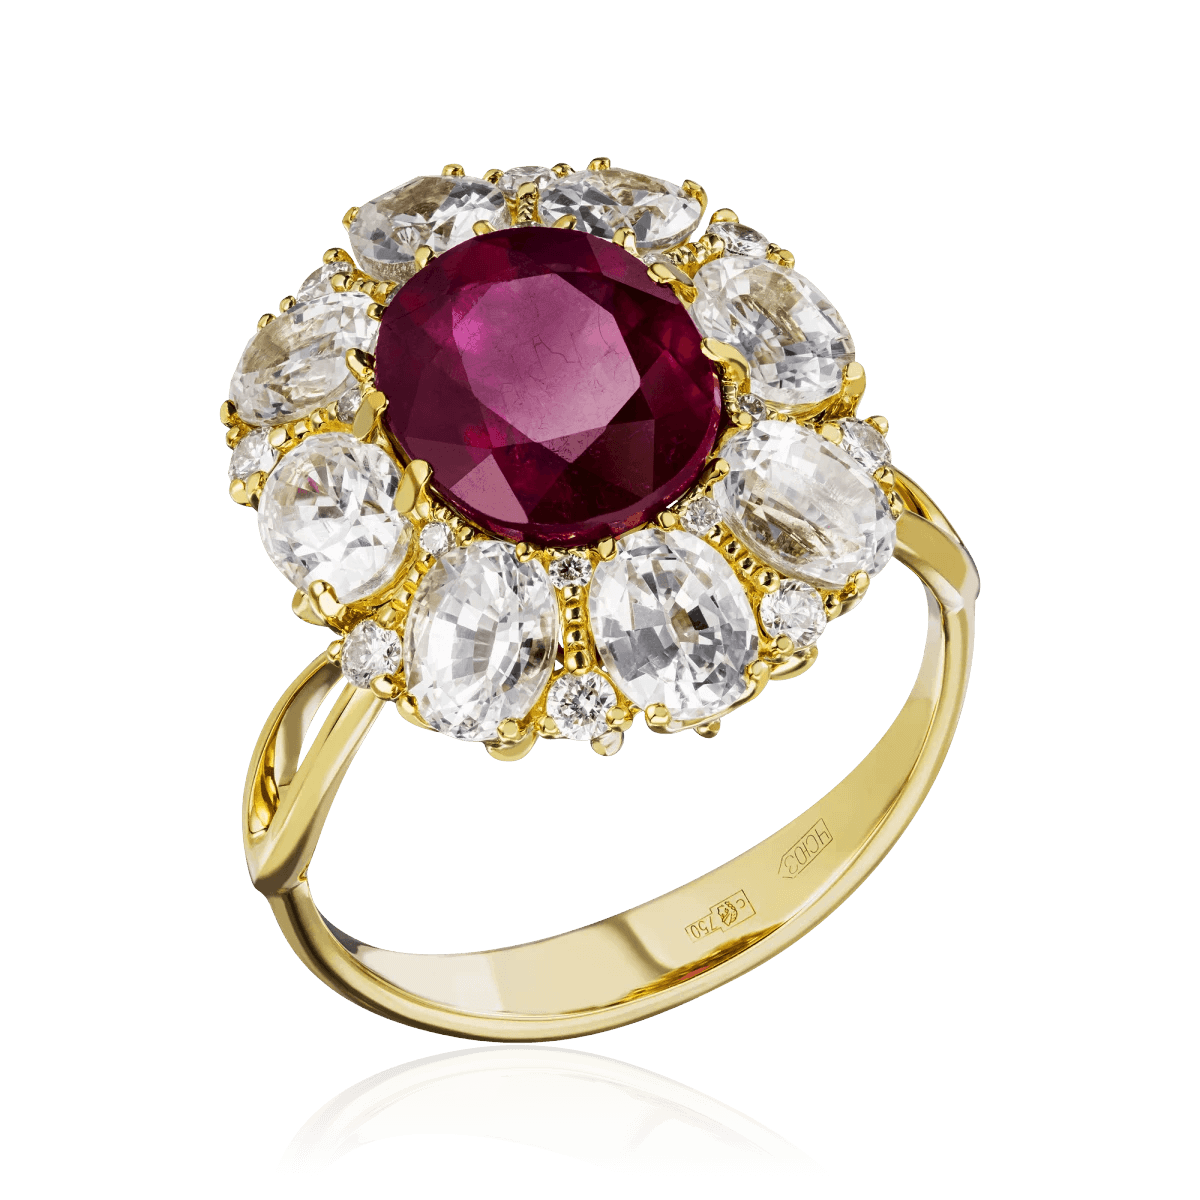 Кольцо с рубином, белыми сапфирами, бриллиантами из желтого золота 750 пробы, фото № 1